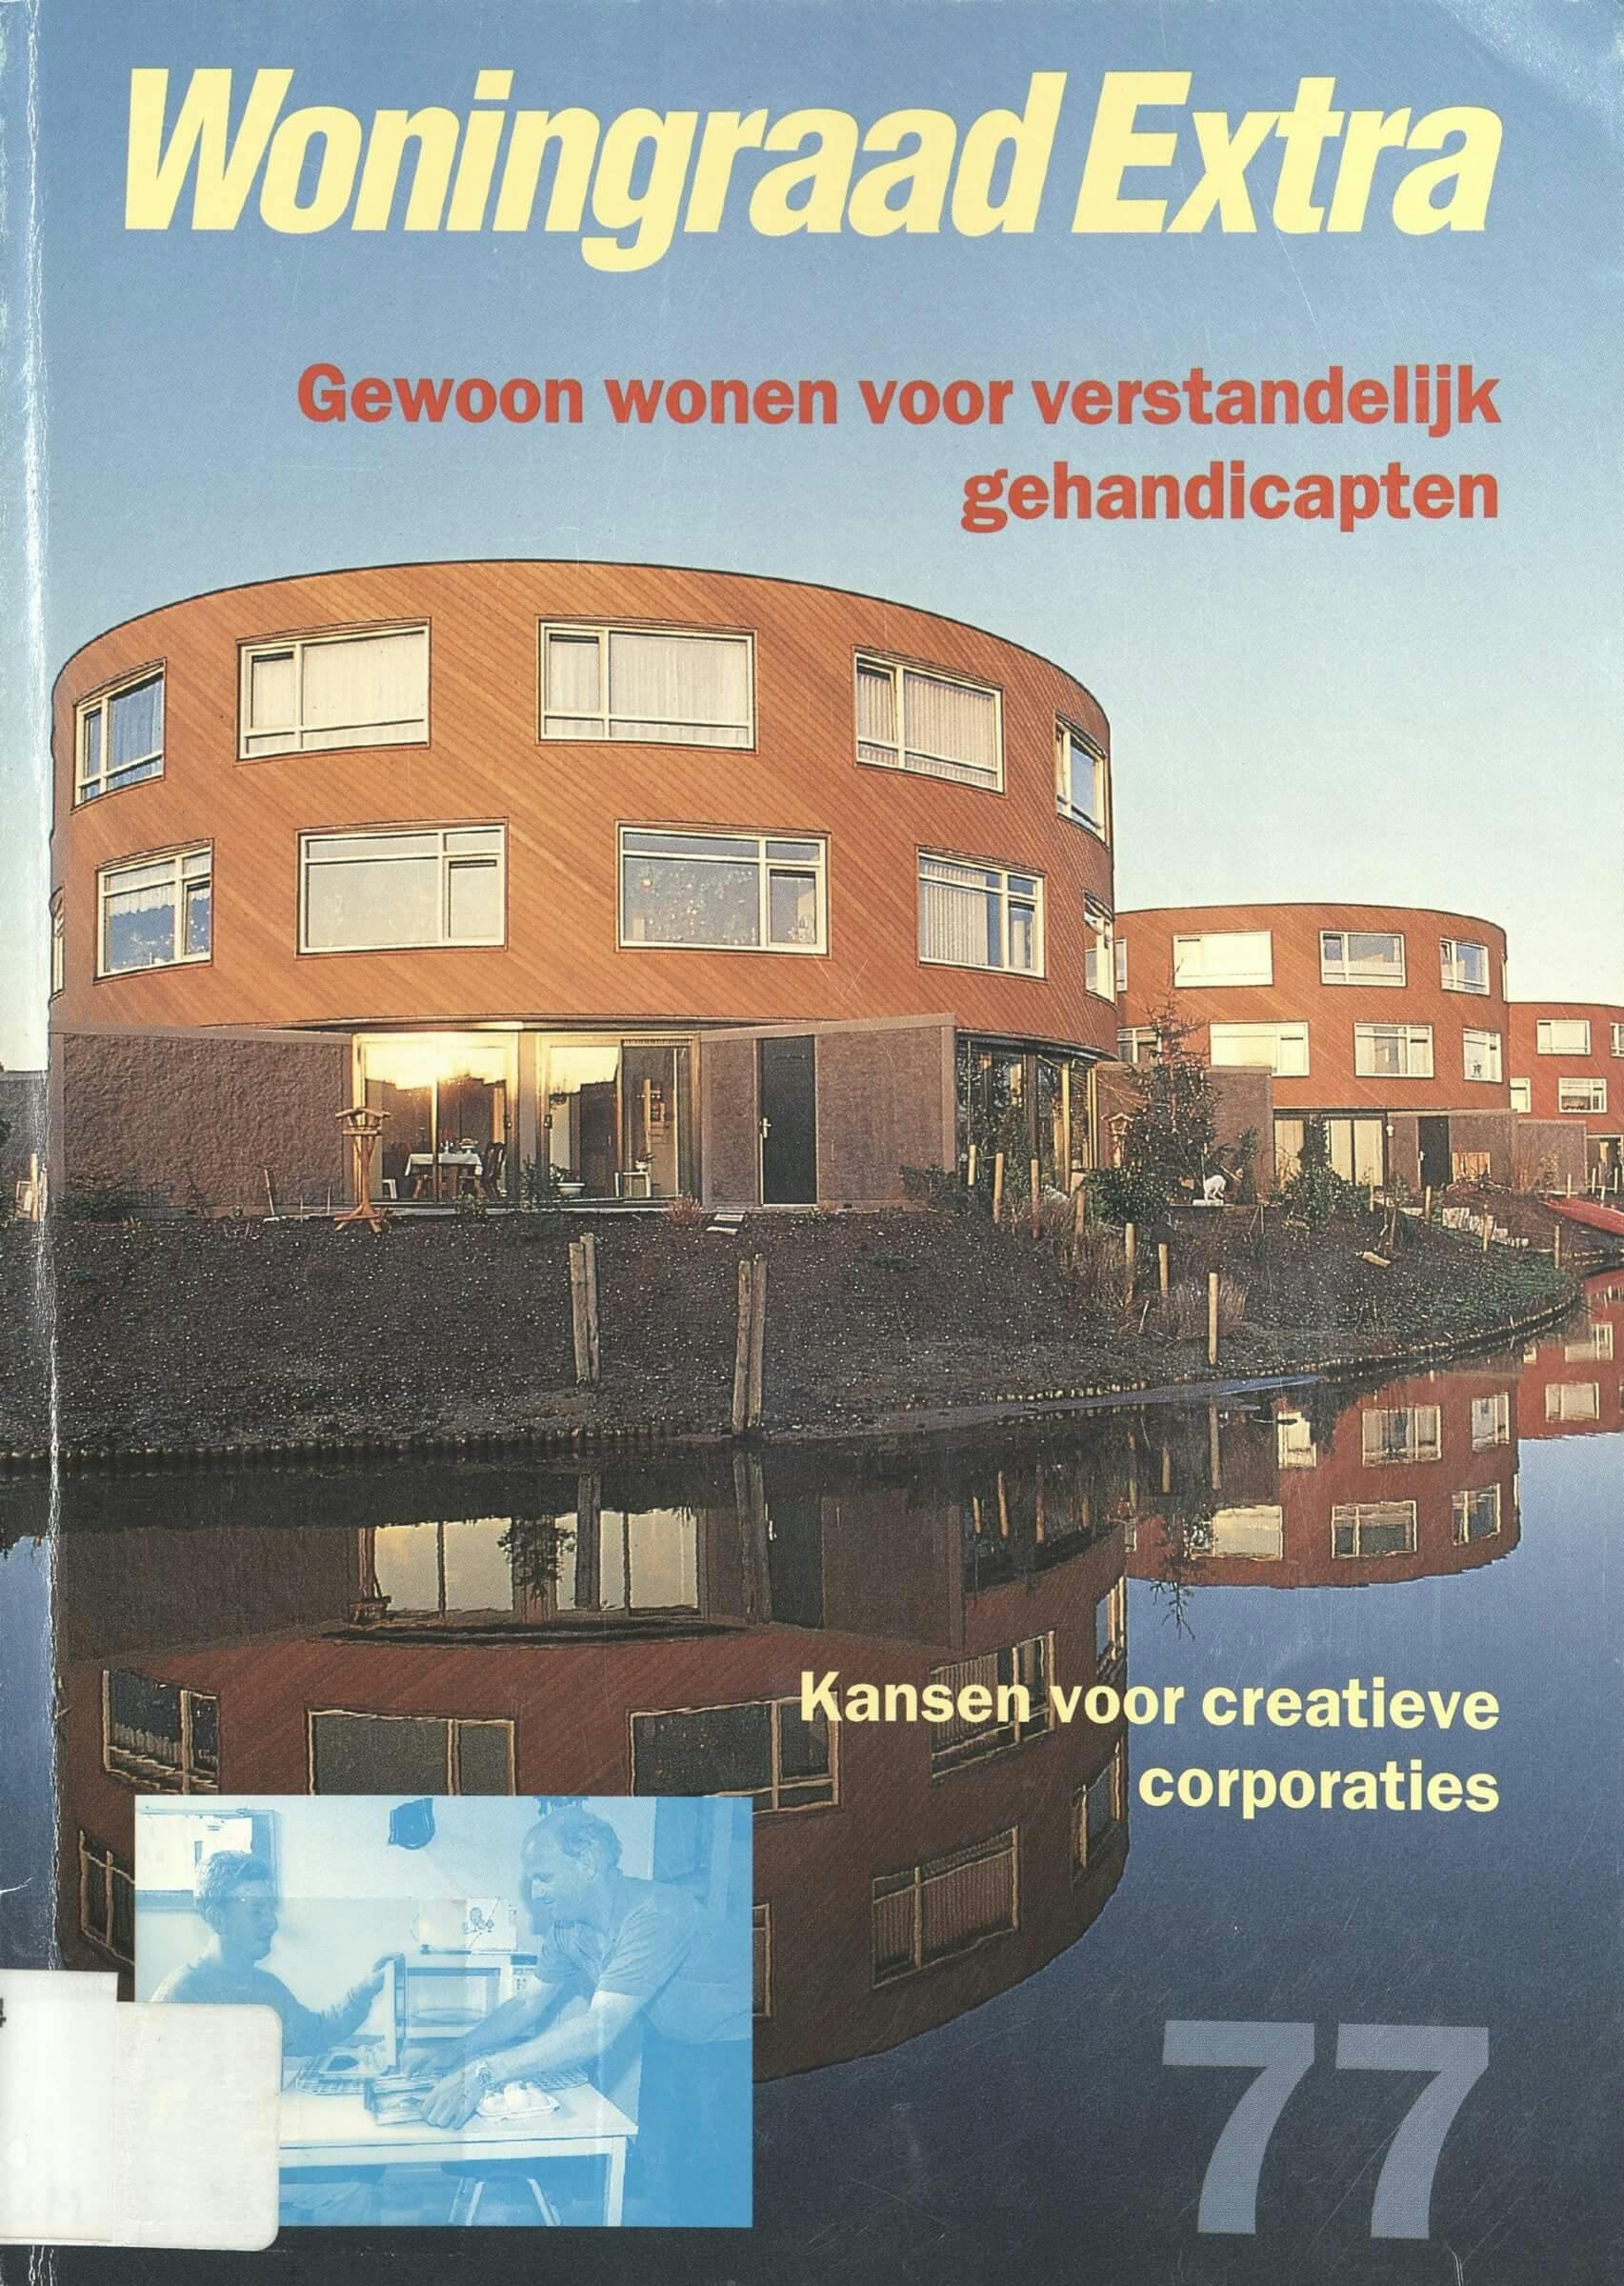 Erica Terpstra. Gewoon wonen voor verstandelijk gehandicapten : Kansen voor creatieve corporaties. Woningraad Extra, 1996 